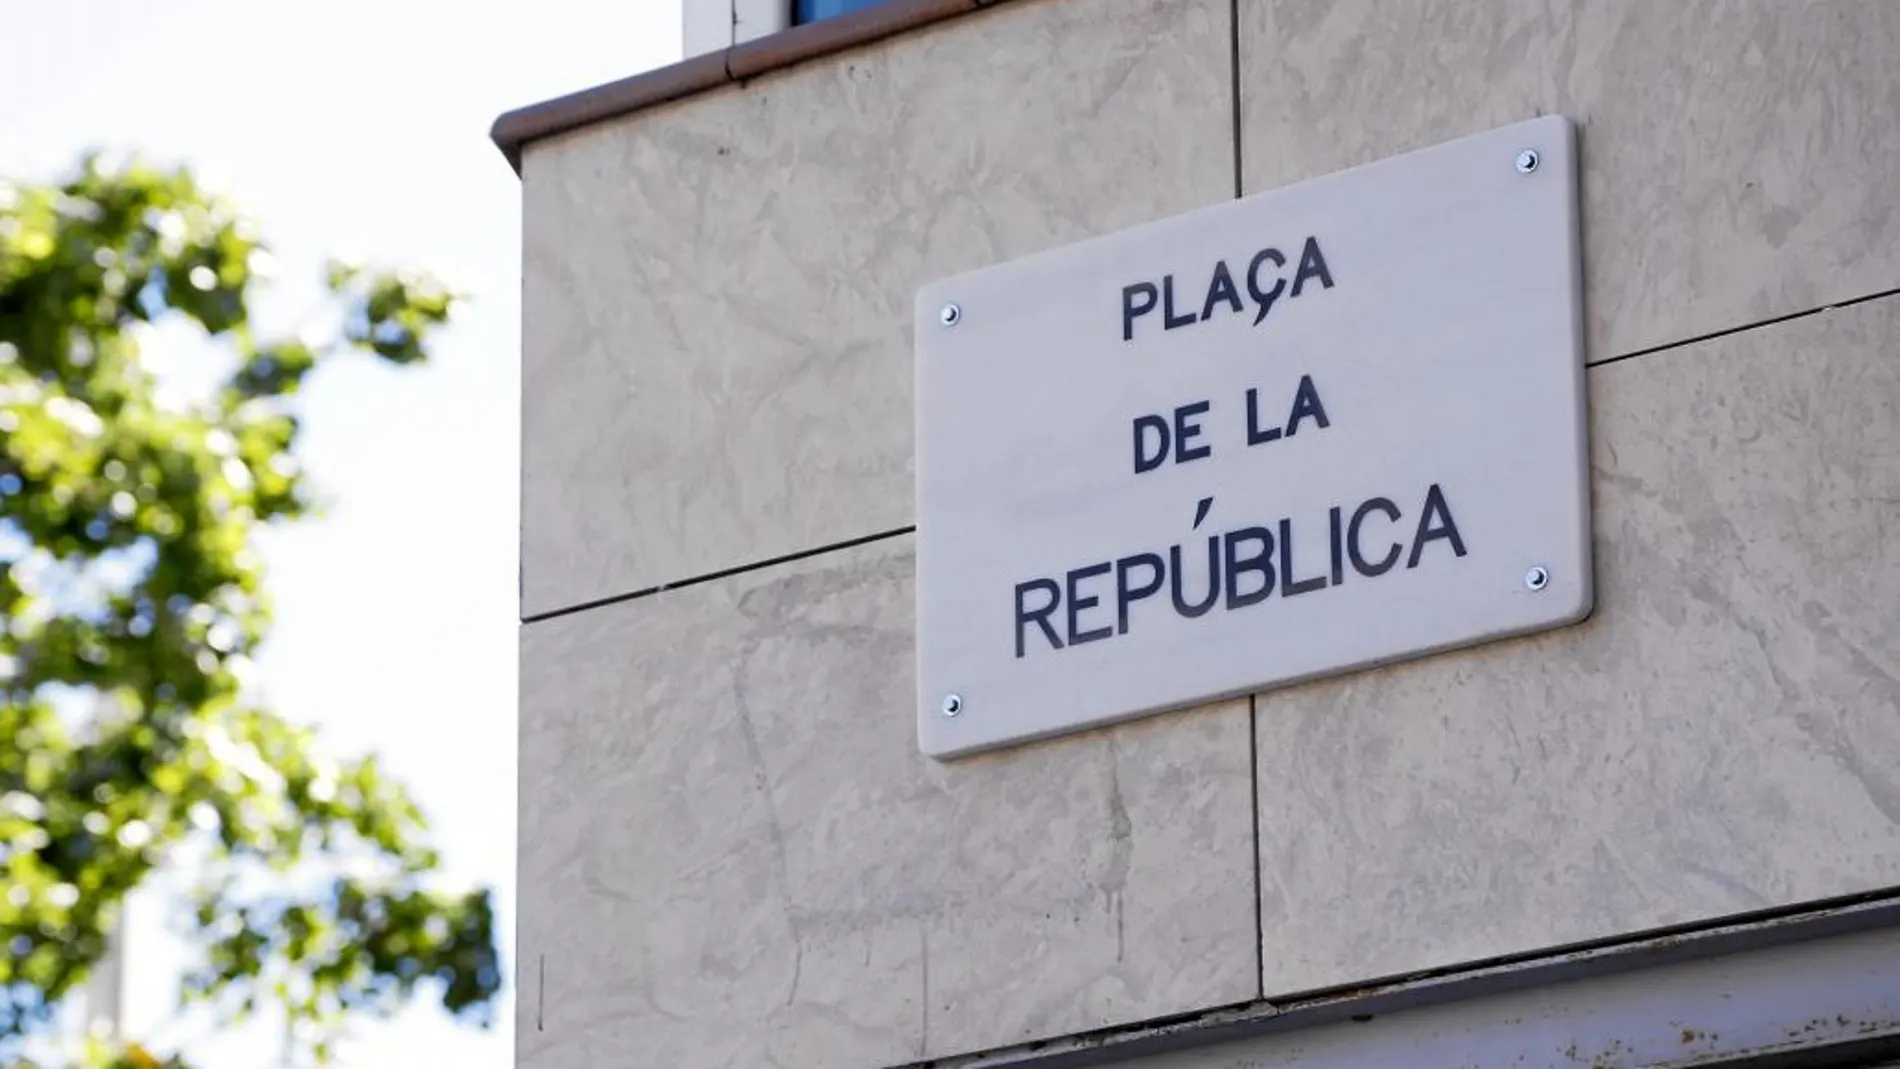 El PP pidió un espacio público para el concejal vasco a pocas semanas de cumplirse el 20 aniversario de su asesinato a manos de ETA